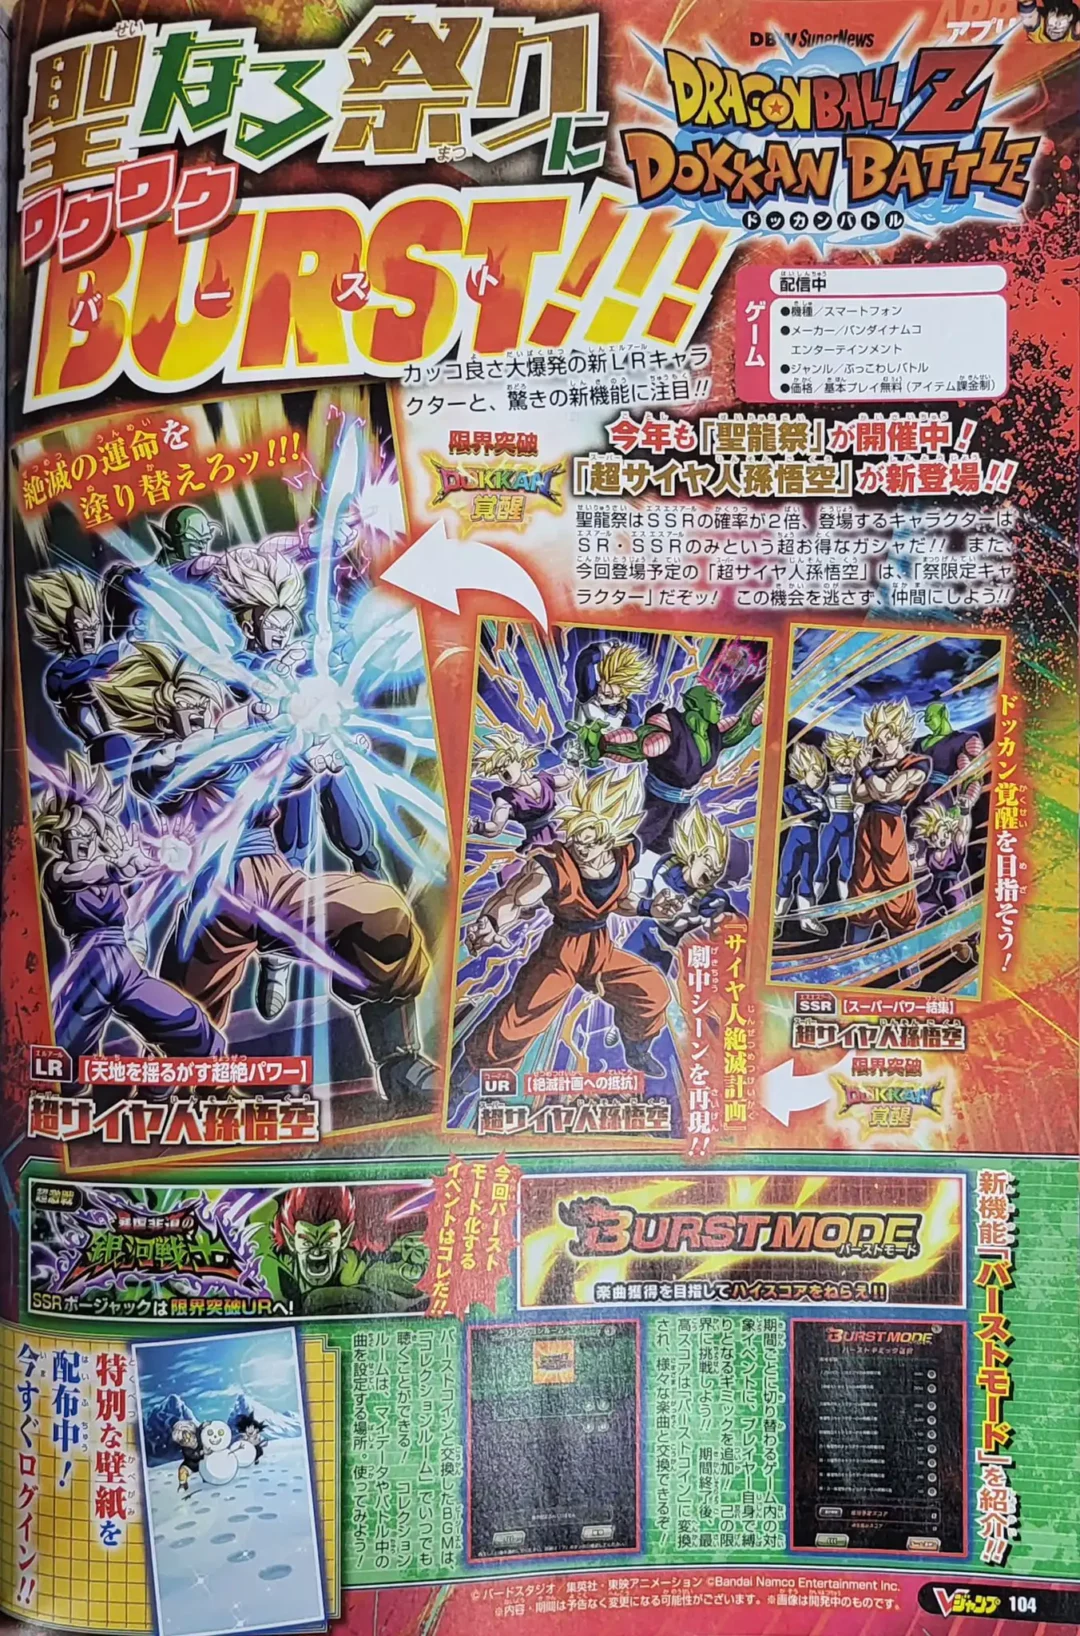 Dokkan Battle V Jump 21 Decembre page 1 copie